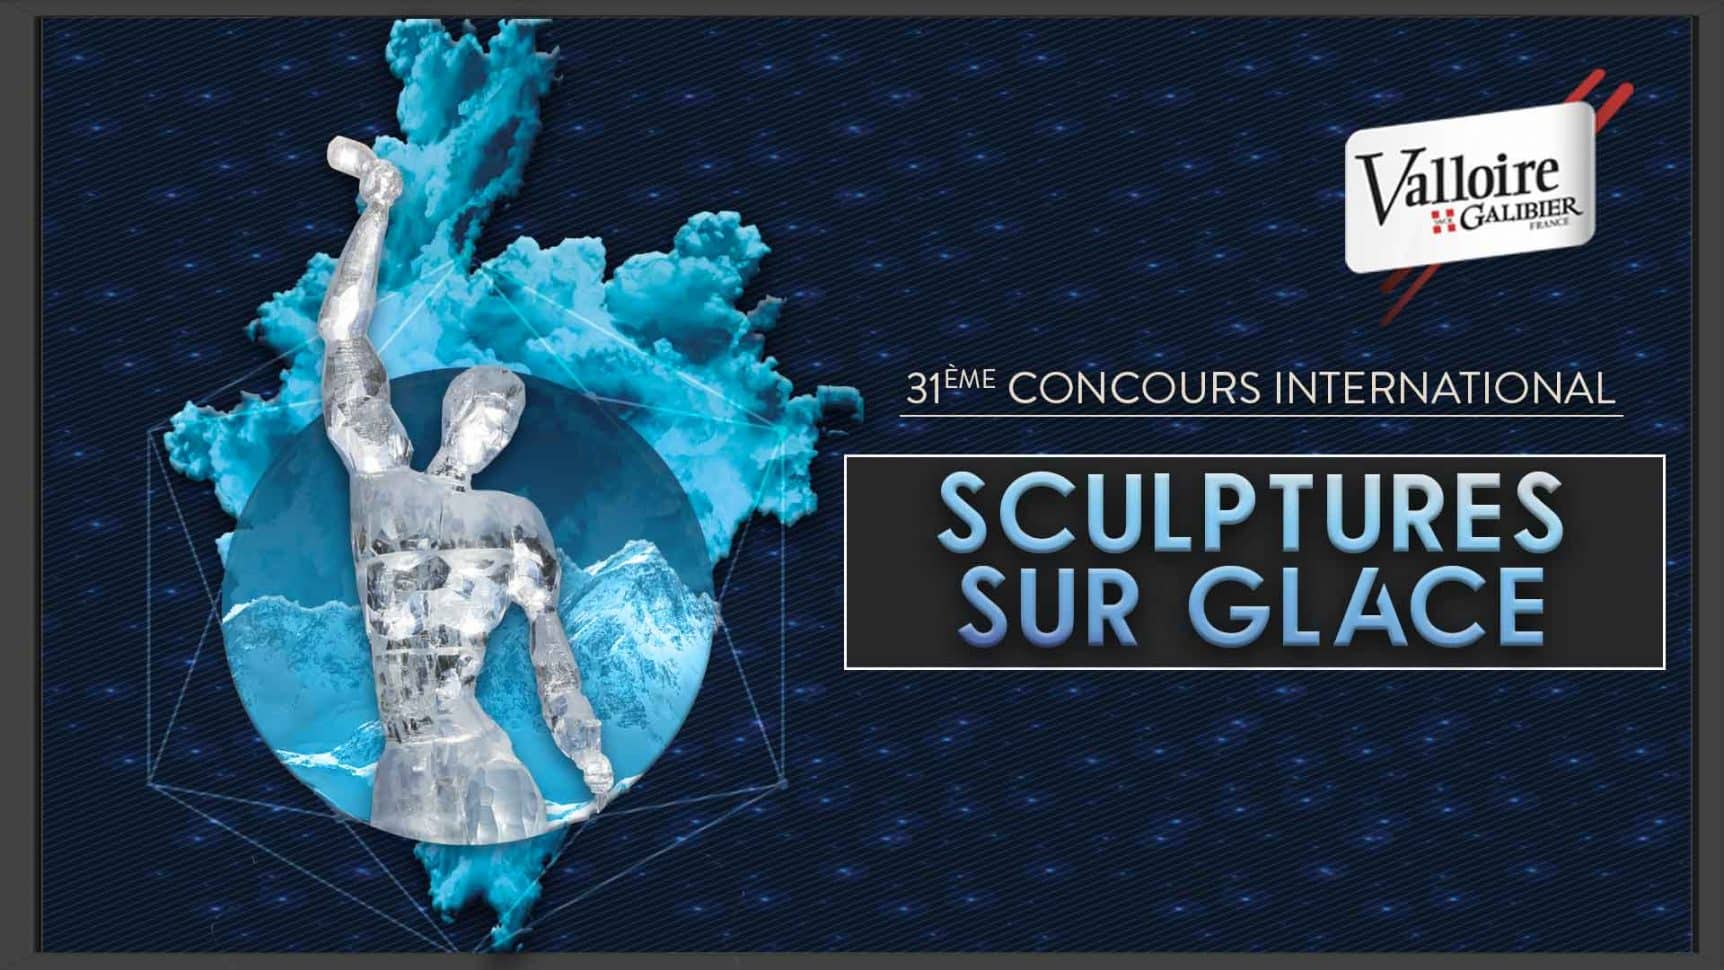 Sculpture en glace réalisée à Valloire durant le concours de sculpture sur glace